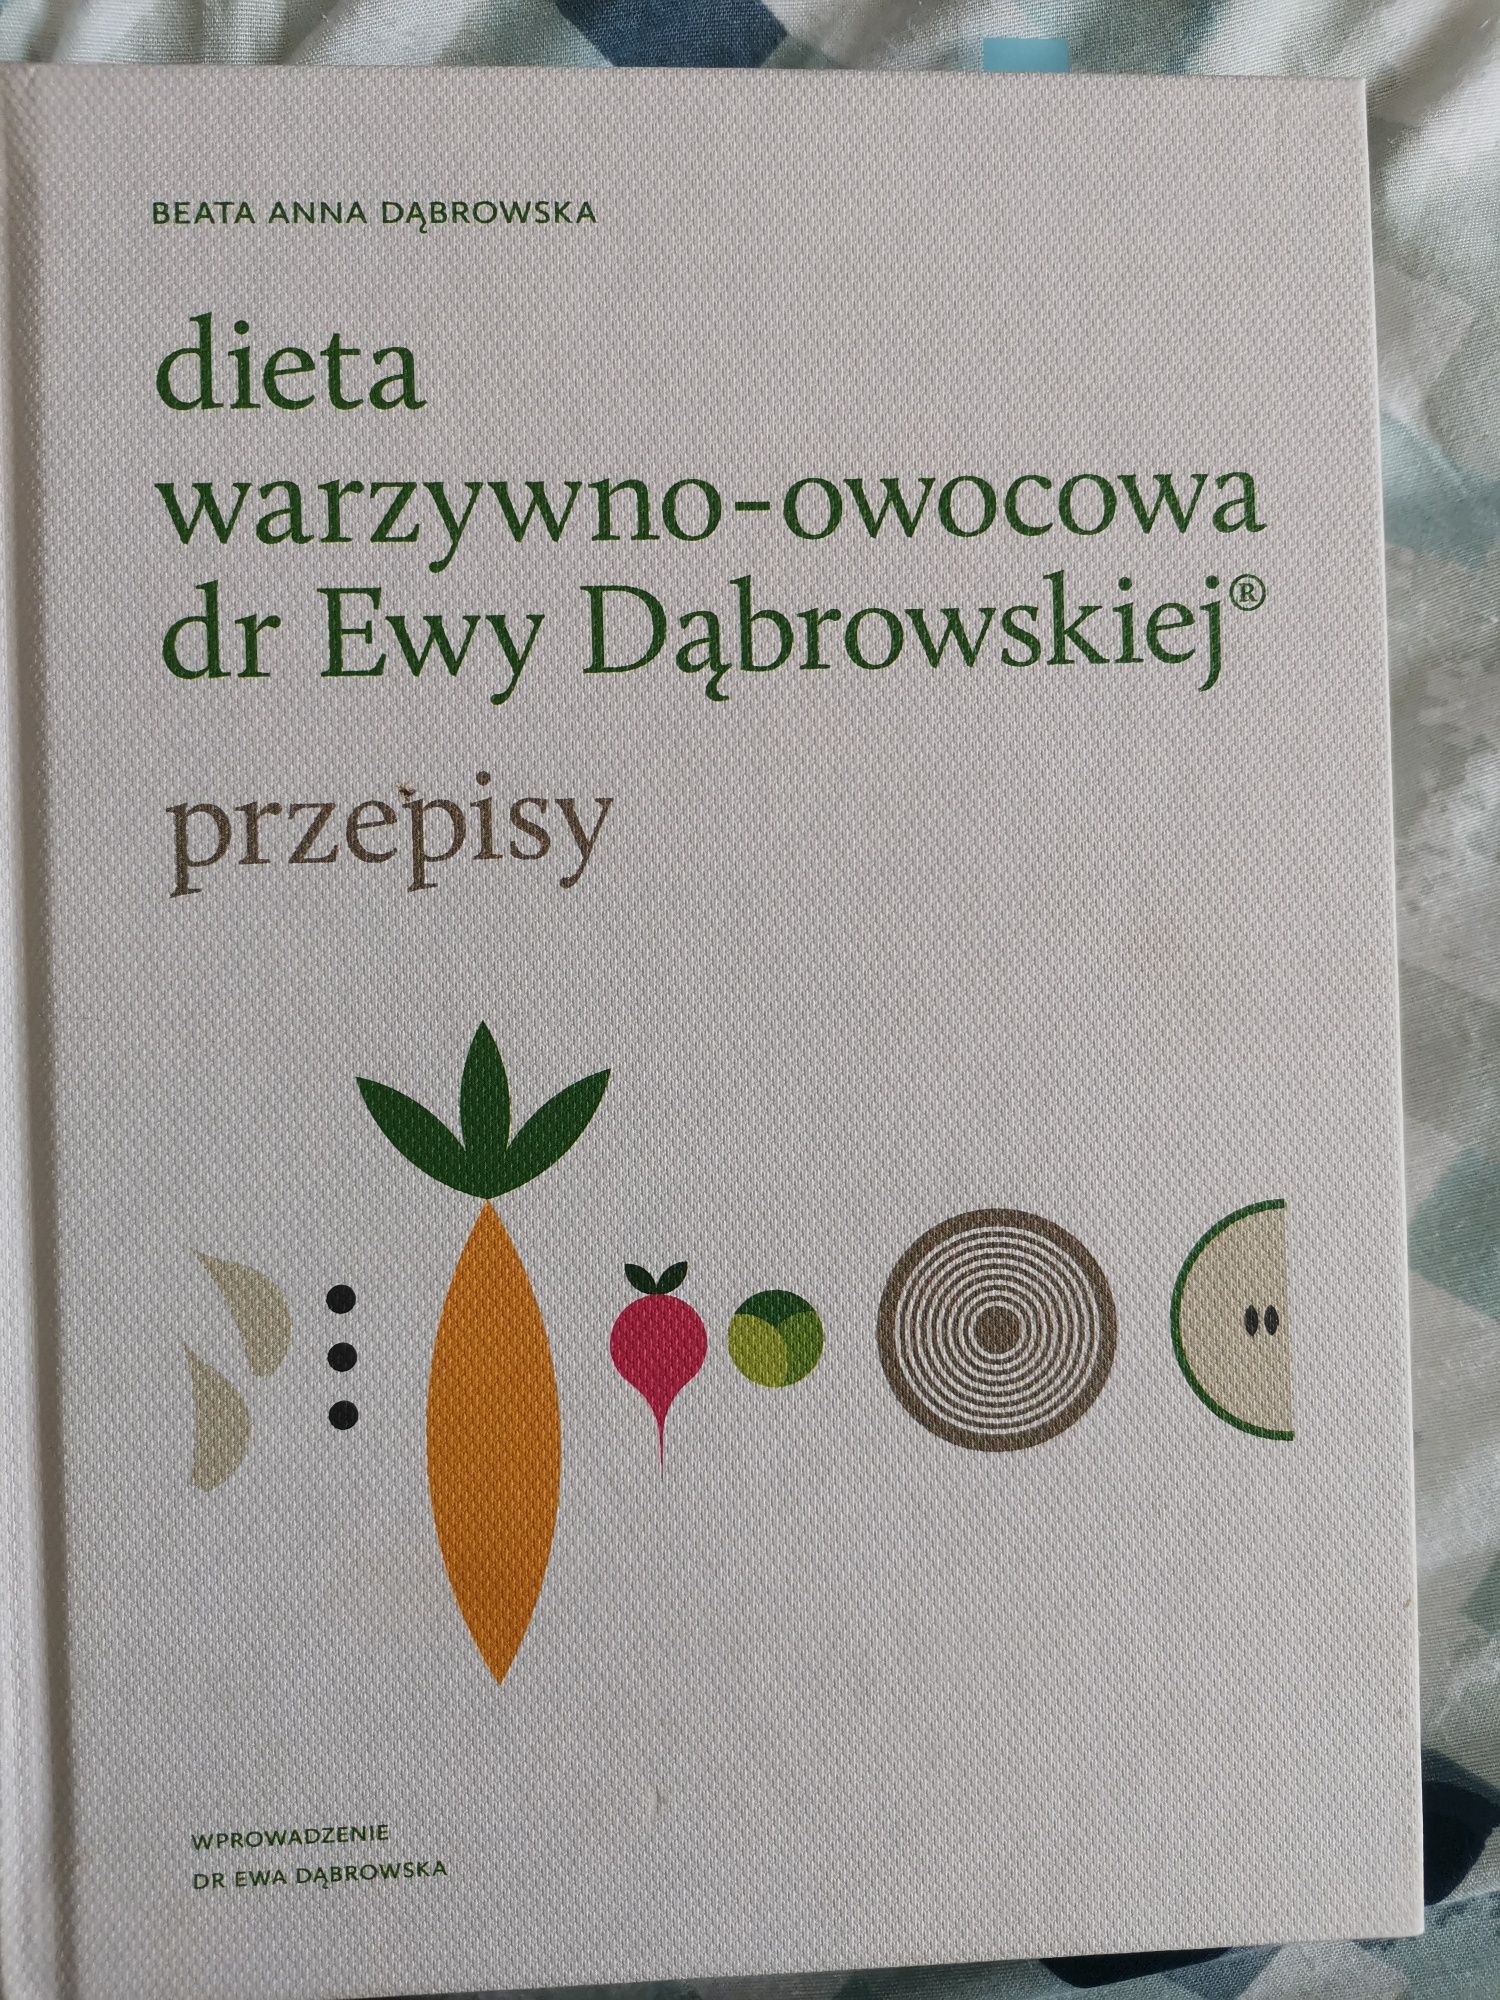 Dieta Ewy Dąbrowskiej post / 4 książki